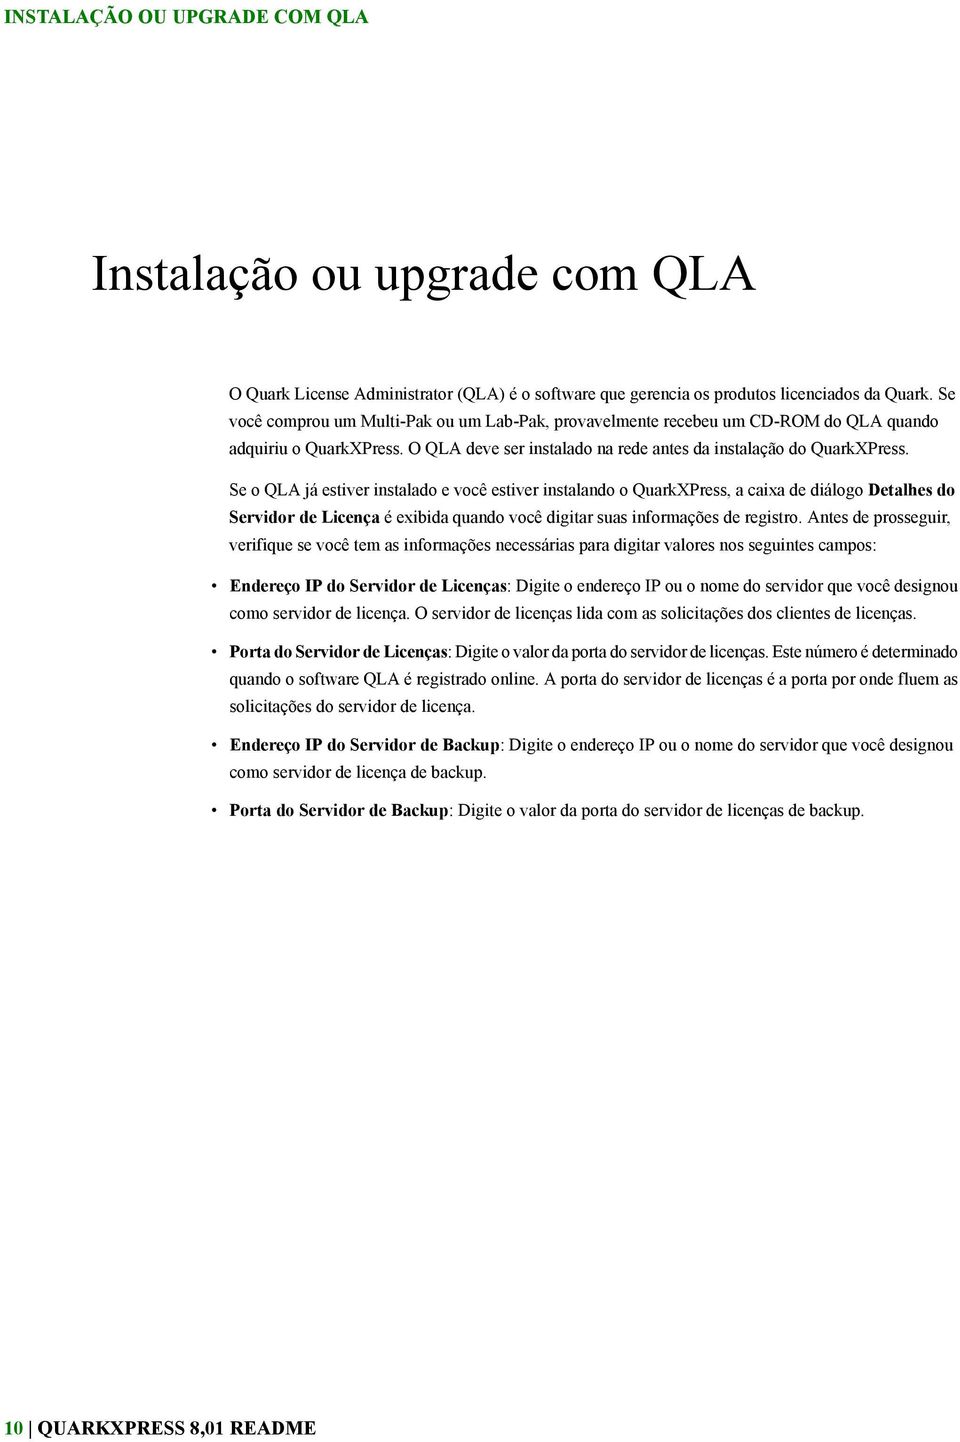 Se o QLA já estiver instalado e você estiver instalando o QuarkXPress, a caixa de diálogo Detalhes do Servidor de Licença é exibida quando você digitar suas informações de registro.